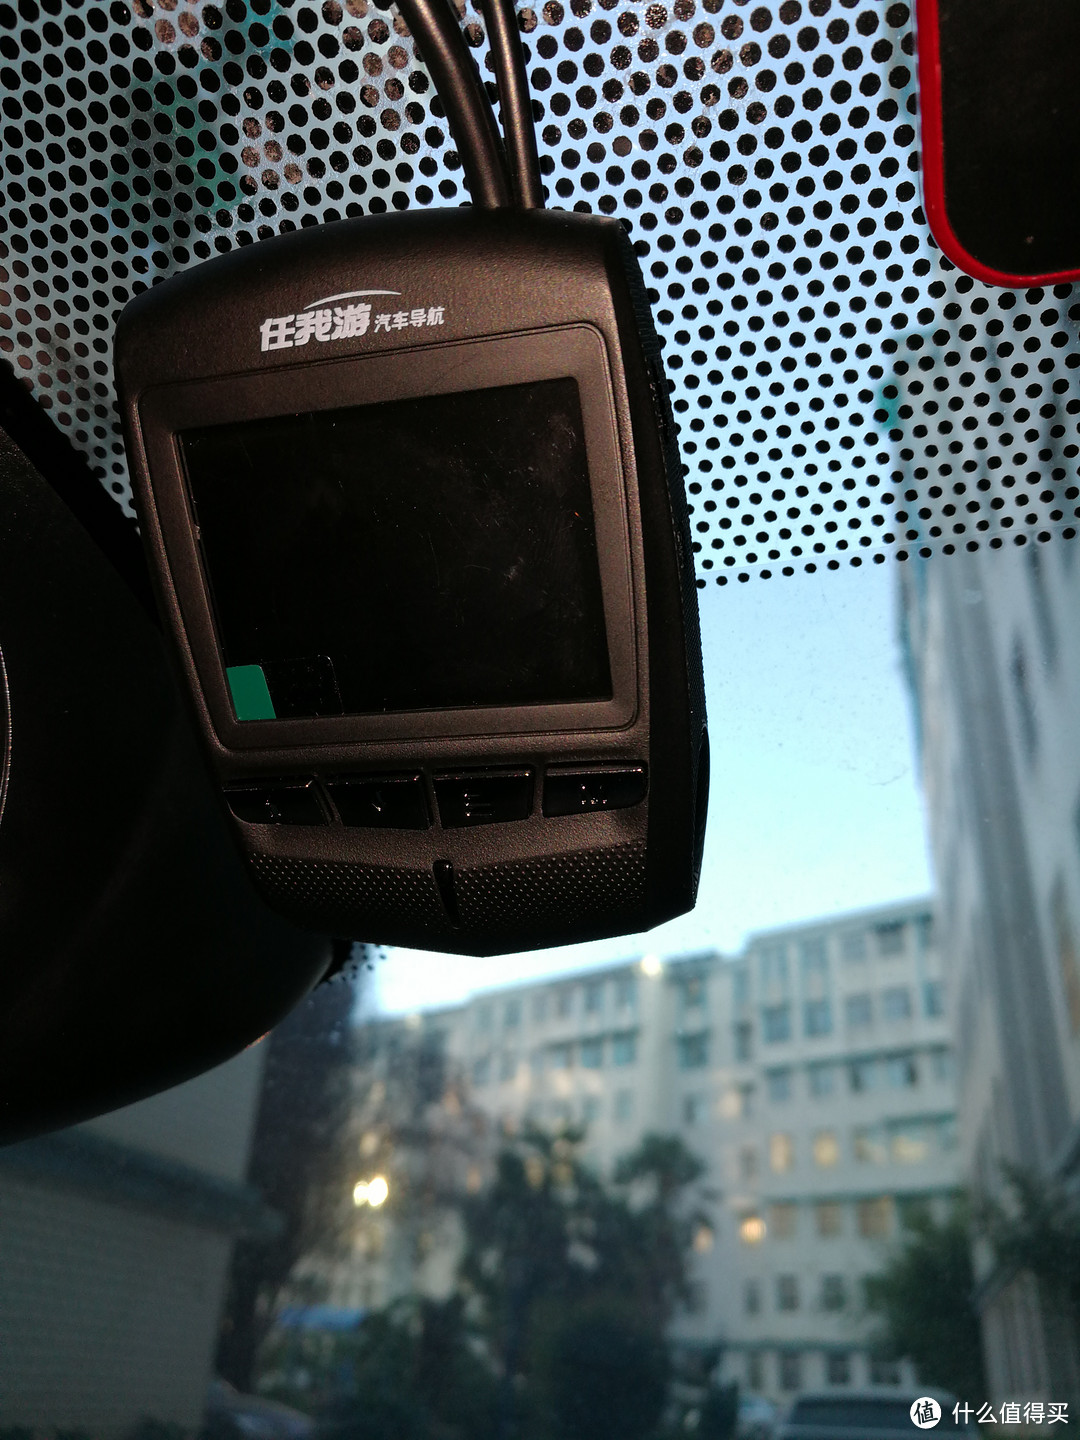 超出预期的清晰 PAPAGO N291 2020款 WIFI 行车记录仪